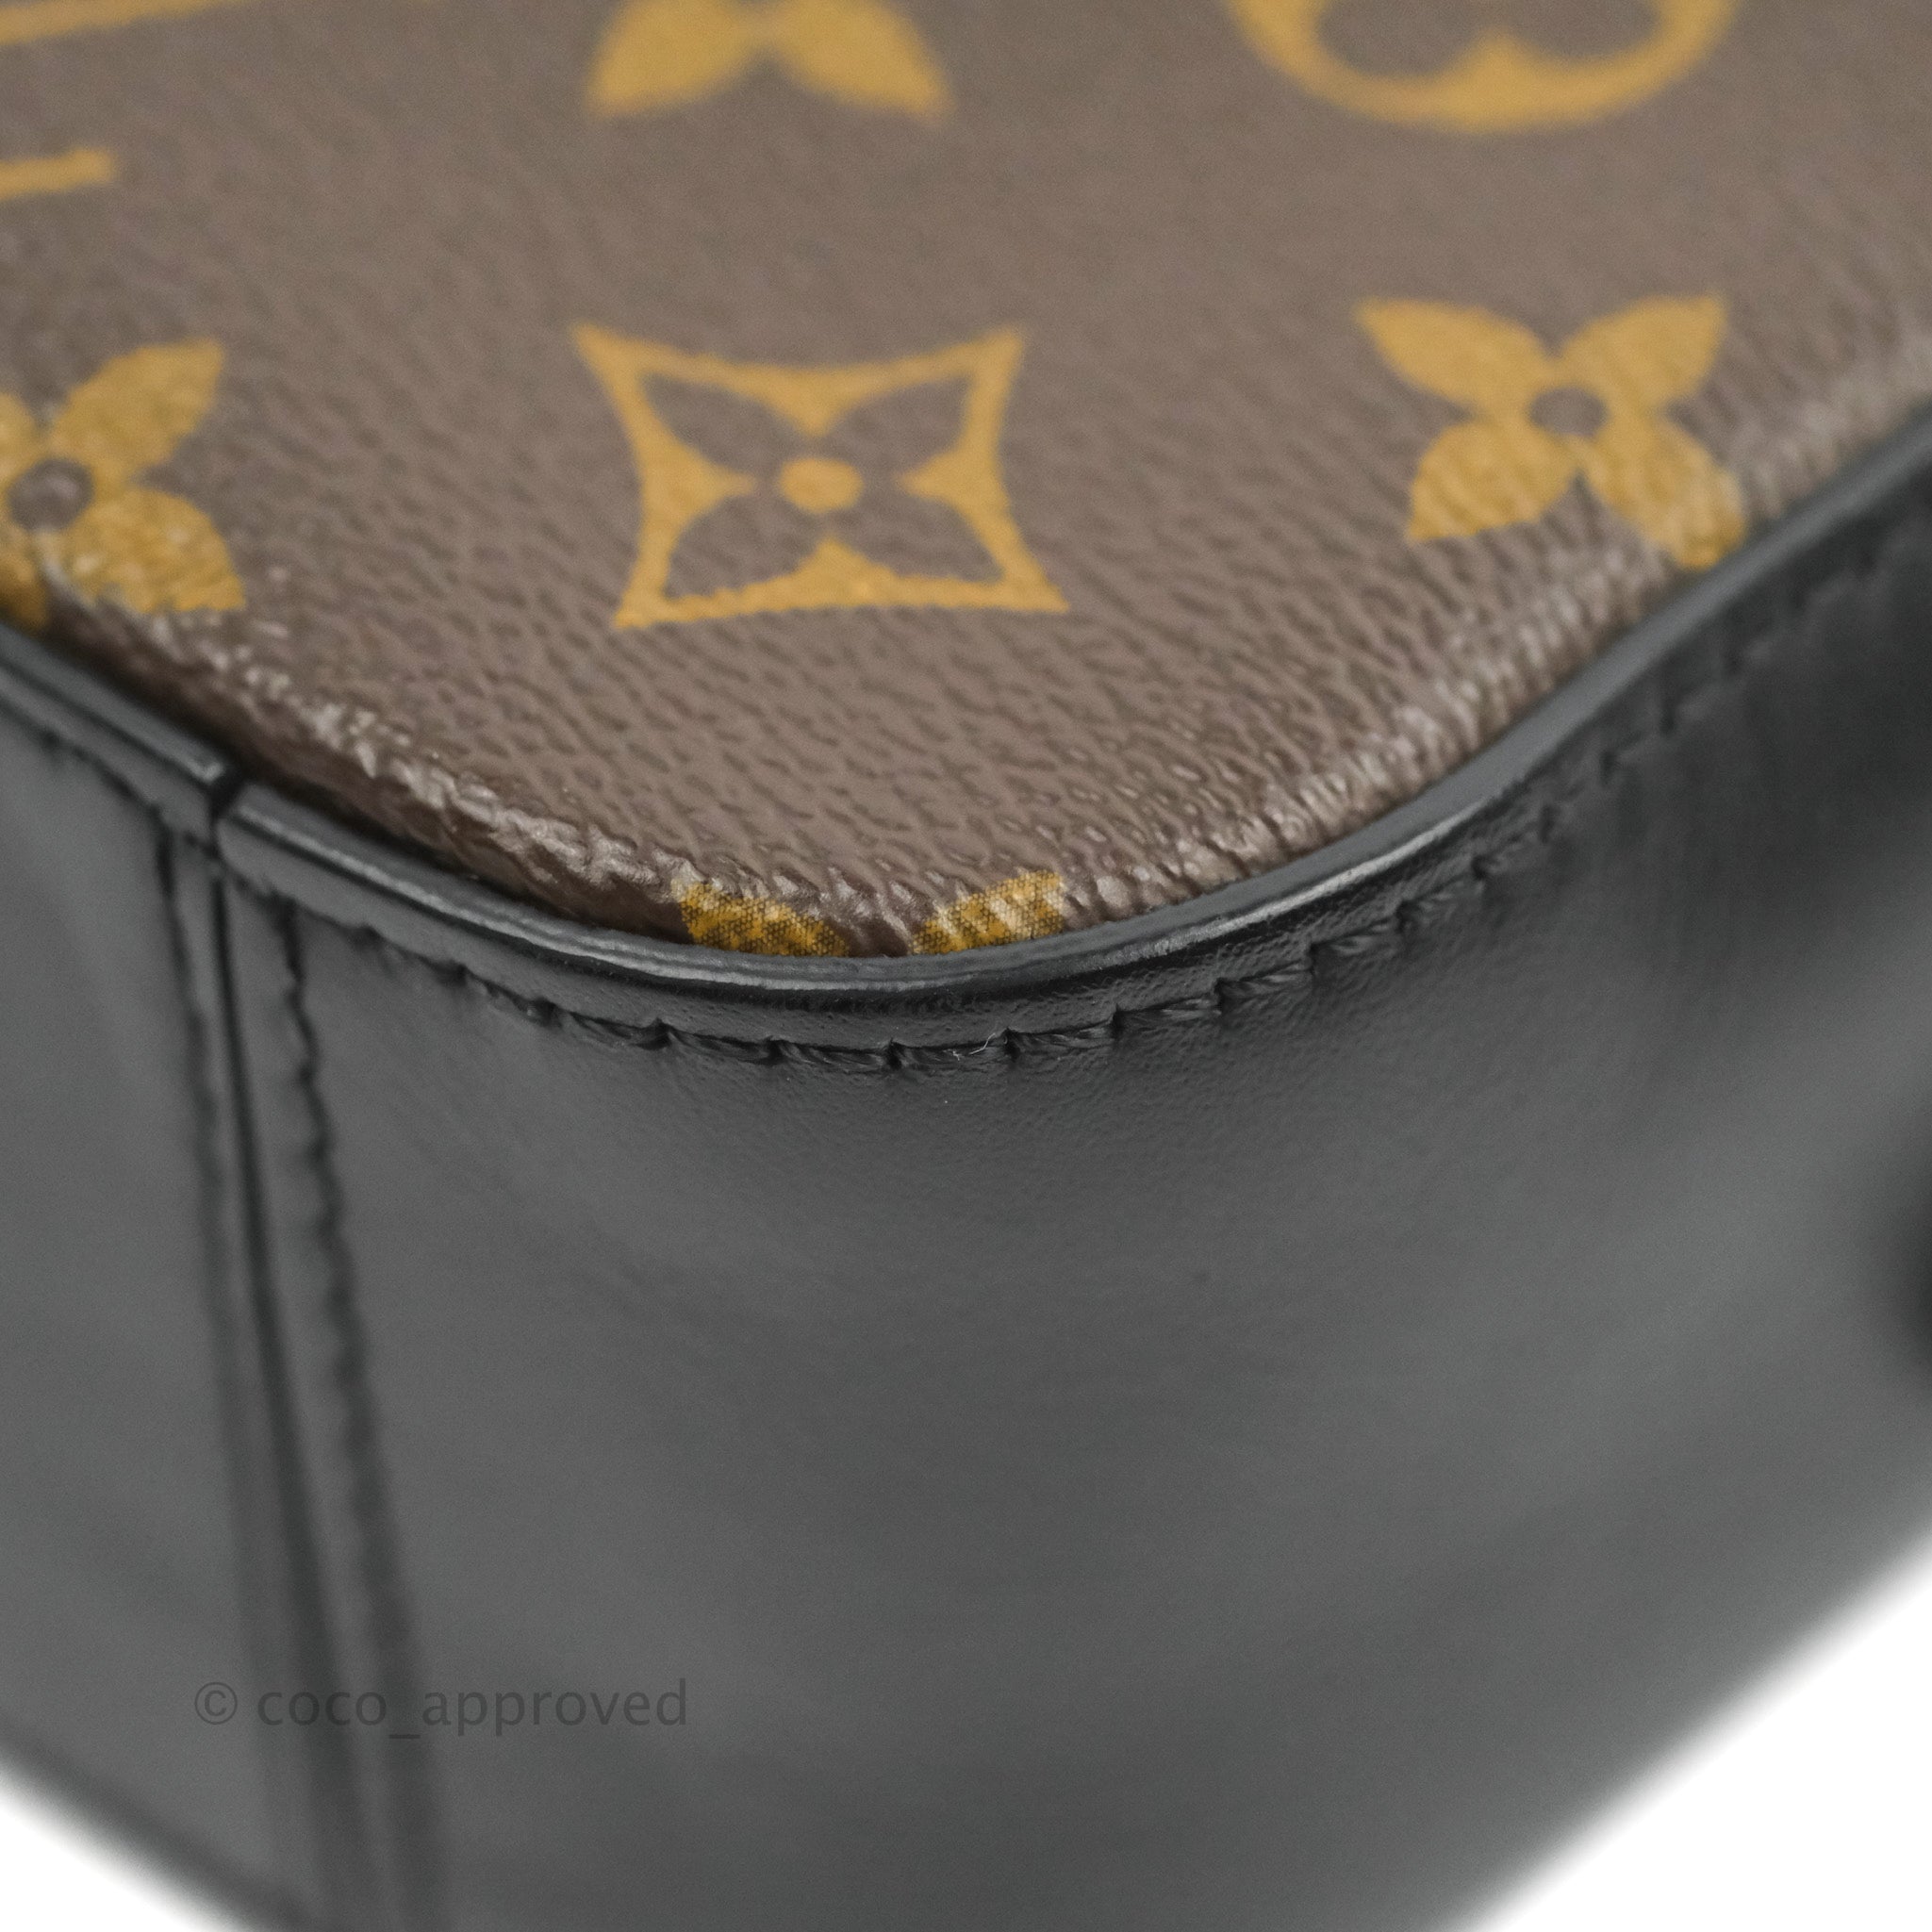 Louis Vuitton Saintonge Monogram Canvas Shoulder Bag